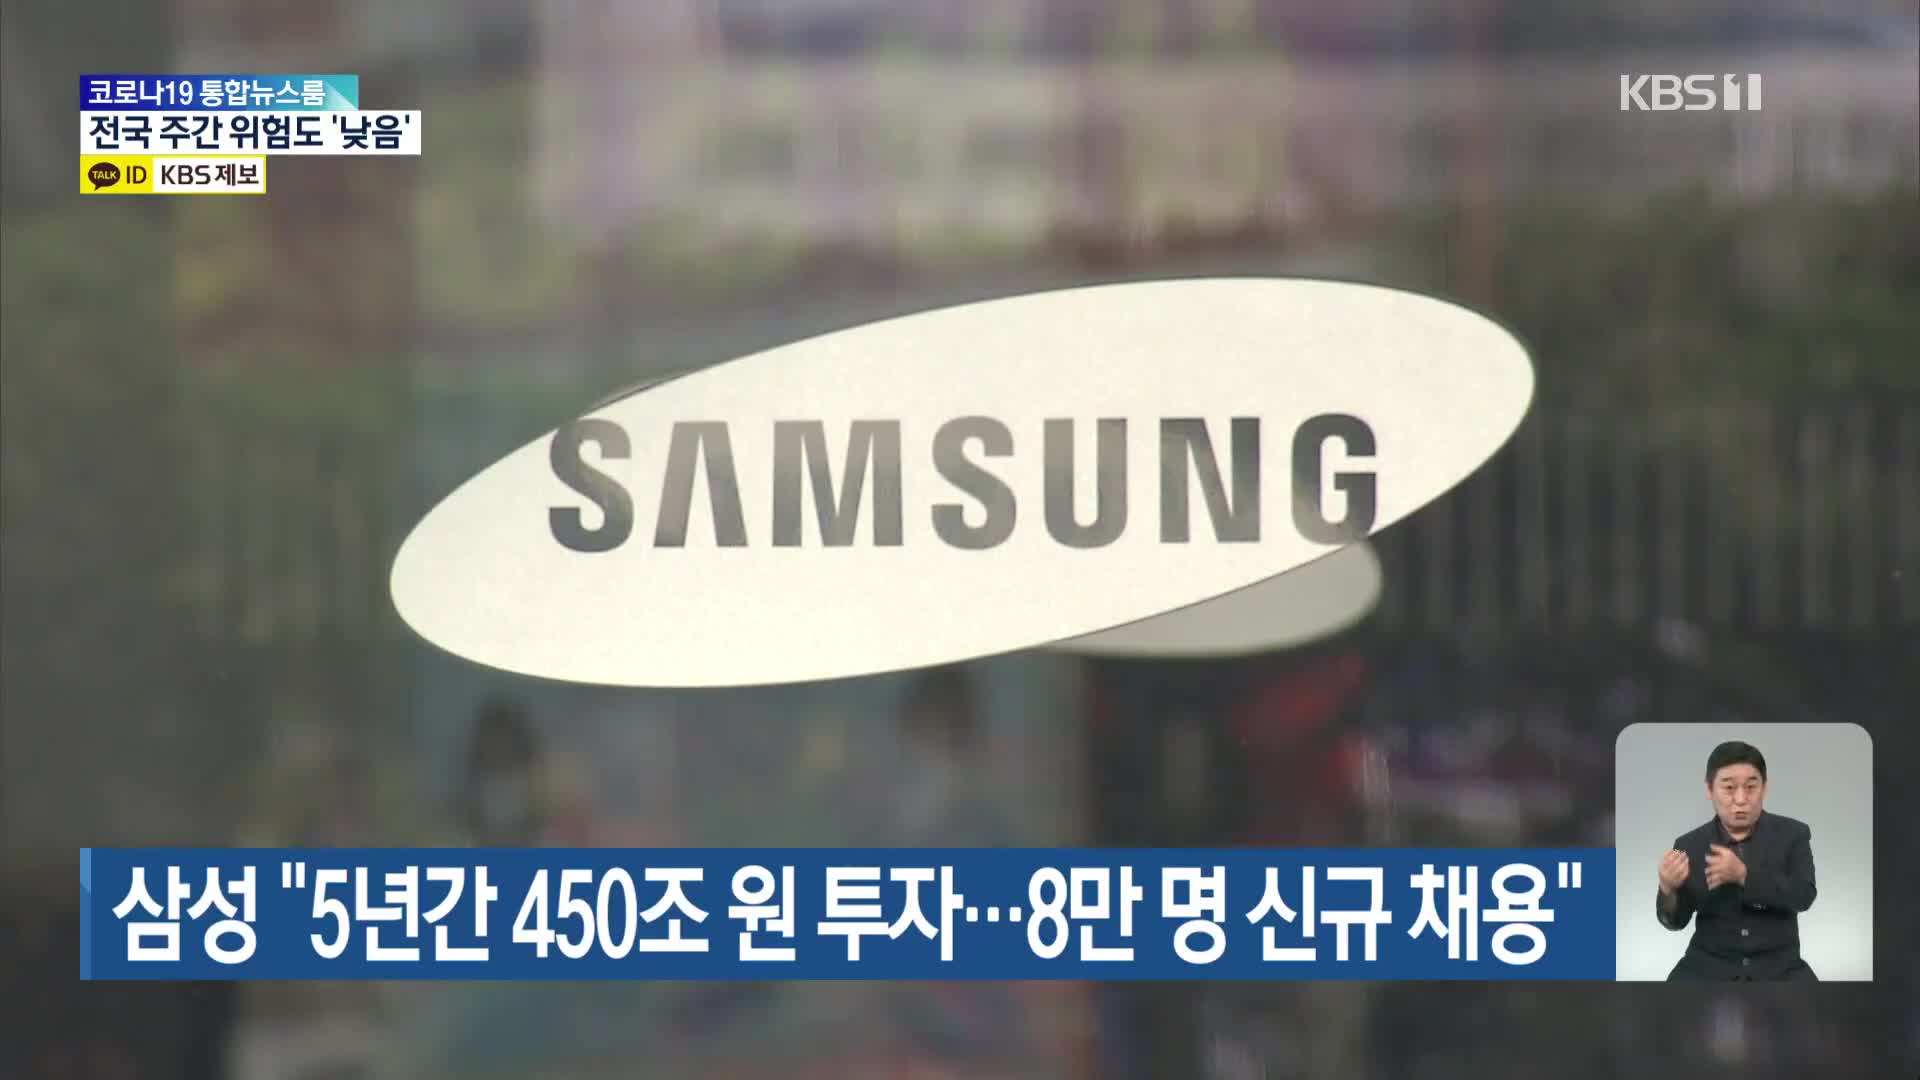 삼성 “5년간 450조 원 투자…8만 명 신규 채용”